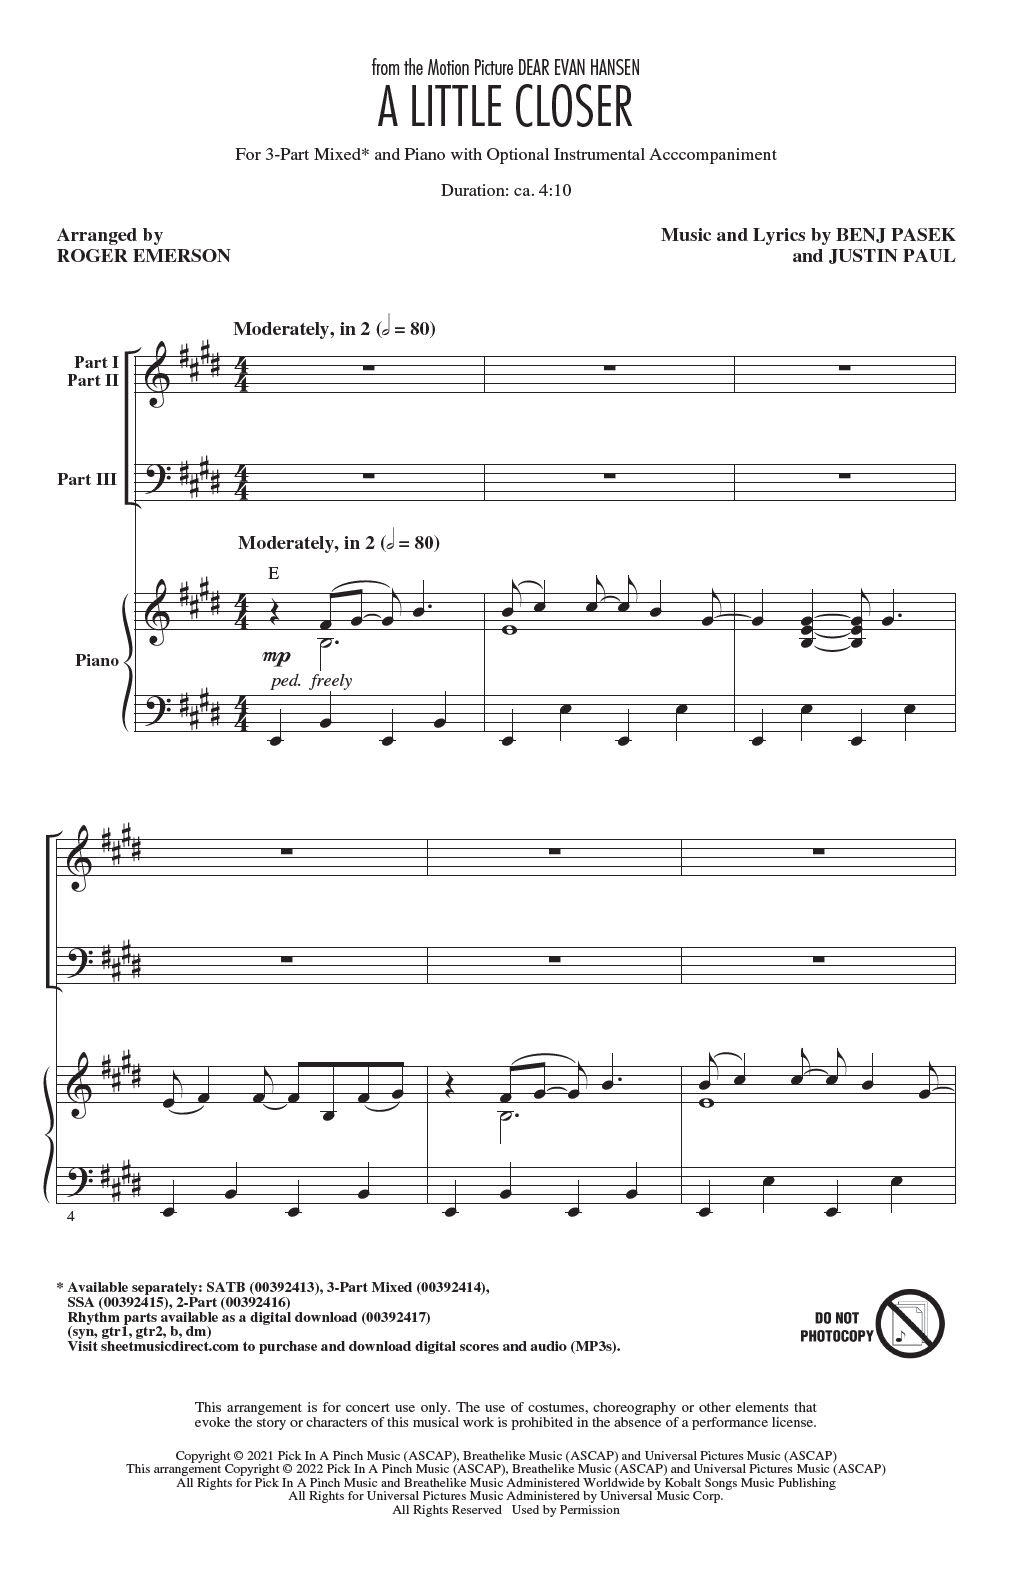 Pasek & Paul A Little Closer (from Dear Evan Hansen) (arr. Roger Emerson) sheet music notes and chords arranged for 3-Part Mixed Choir